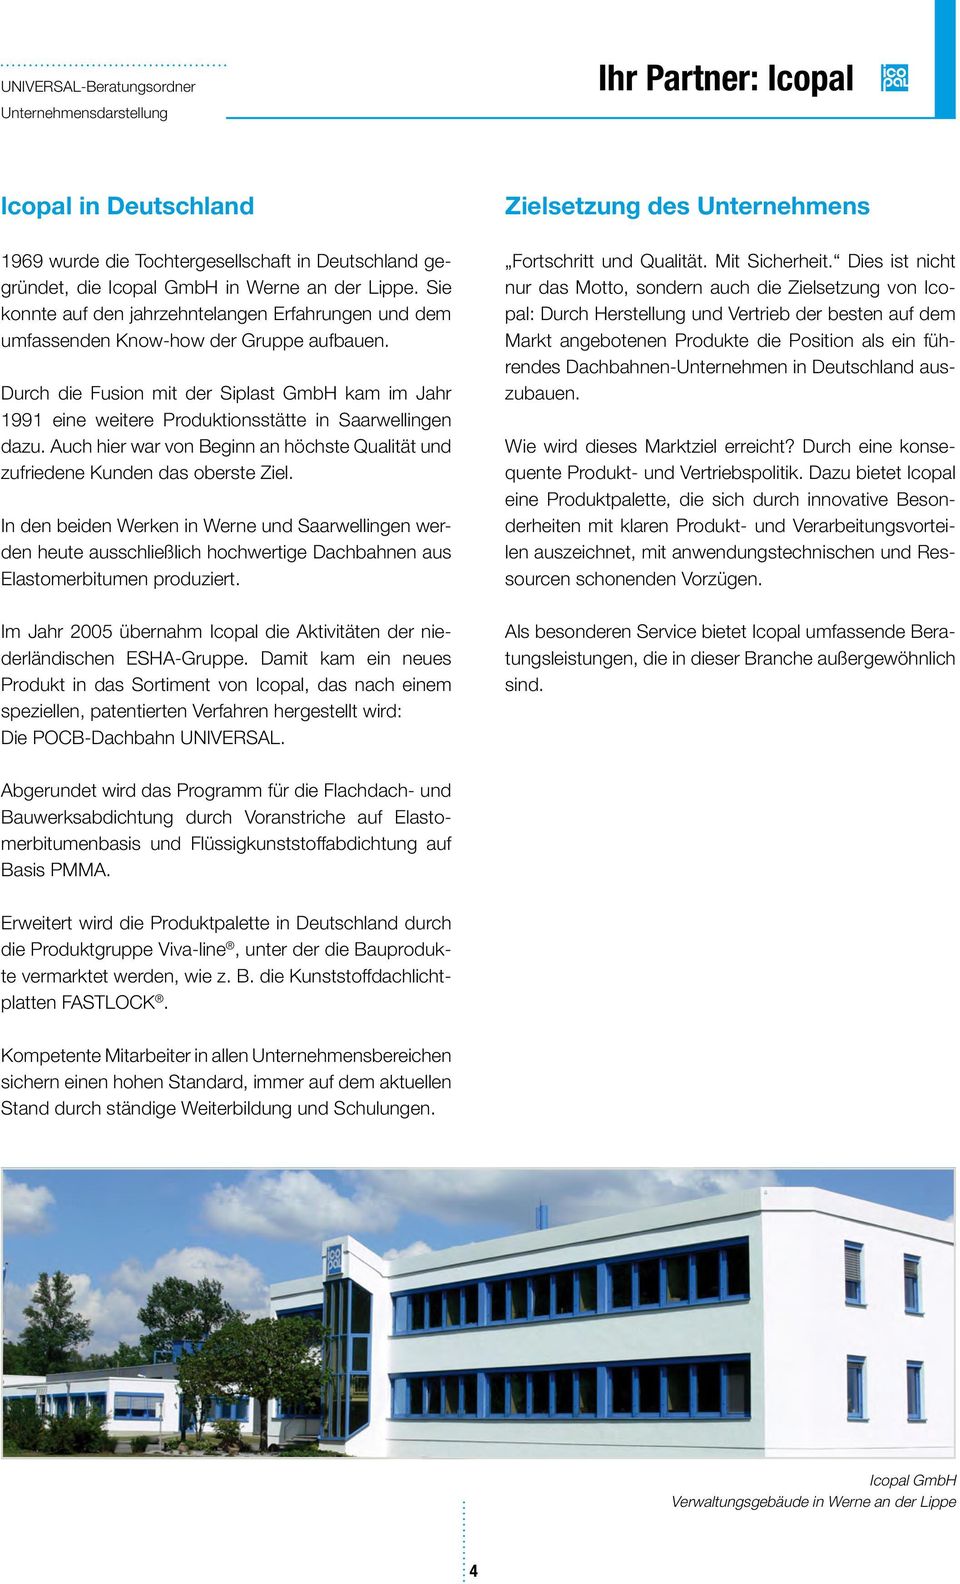 Durch die Fusion mit der Siplast GmbH kam im Jahr 1991 eine weitere Produktionsstätte in Saarwellingen dazu. Auch hier war von Beginn an höchste Qualität und zufriedene Kunden das oberste Ziel.